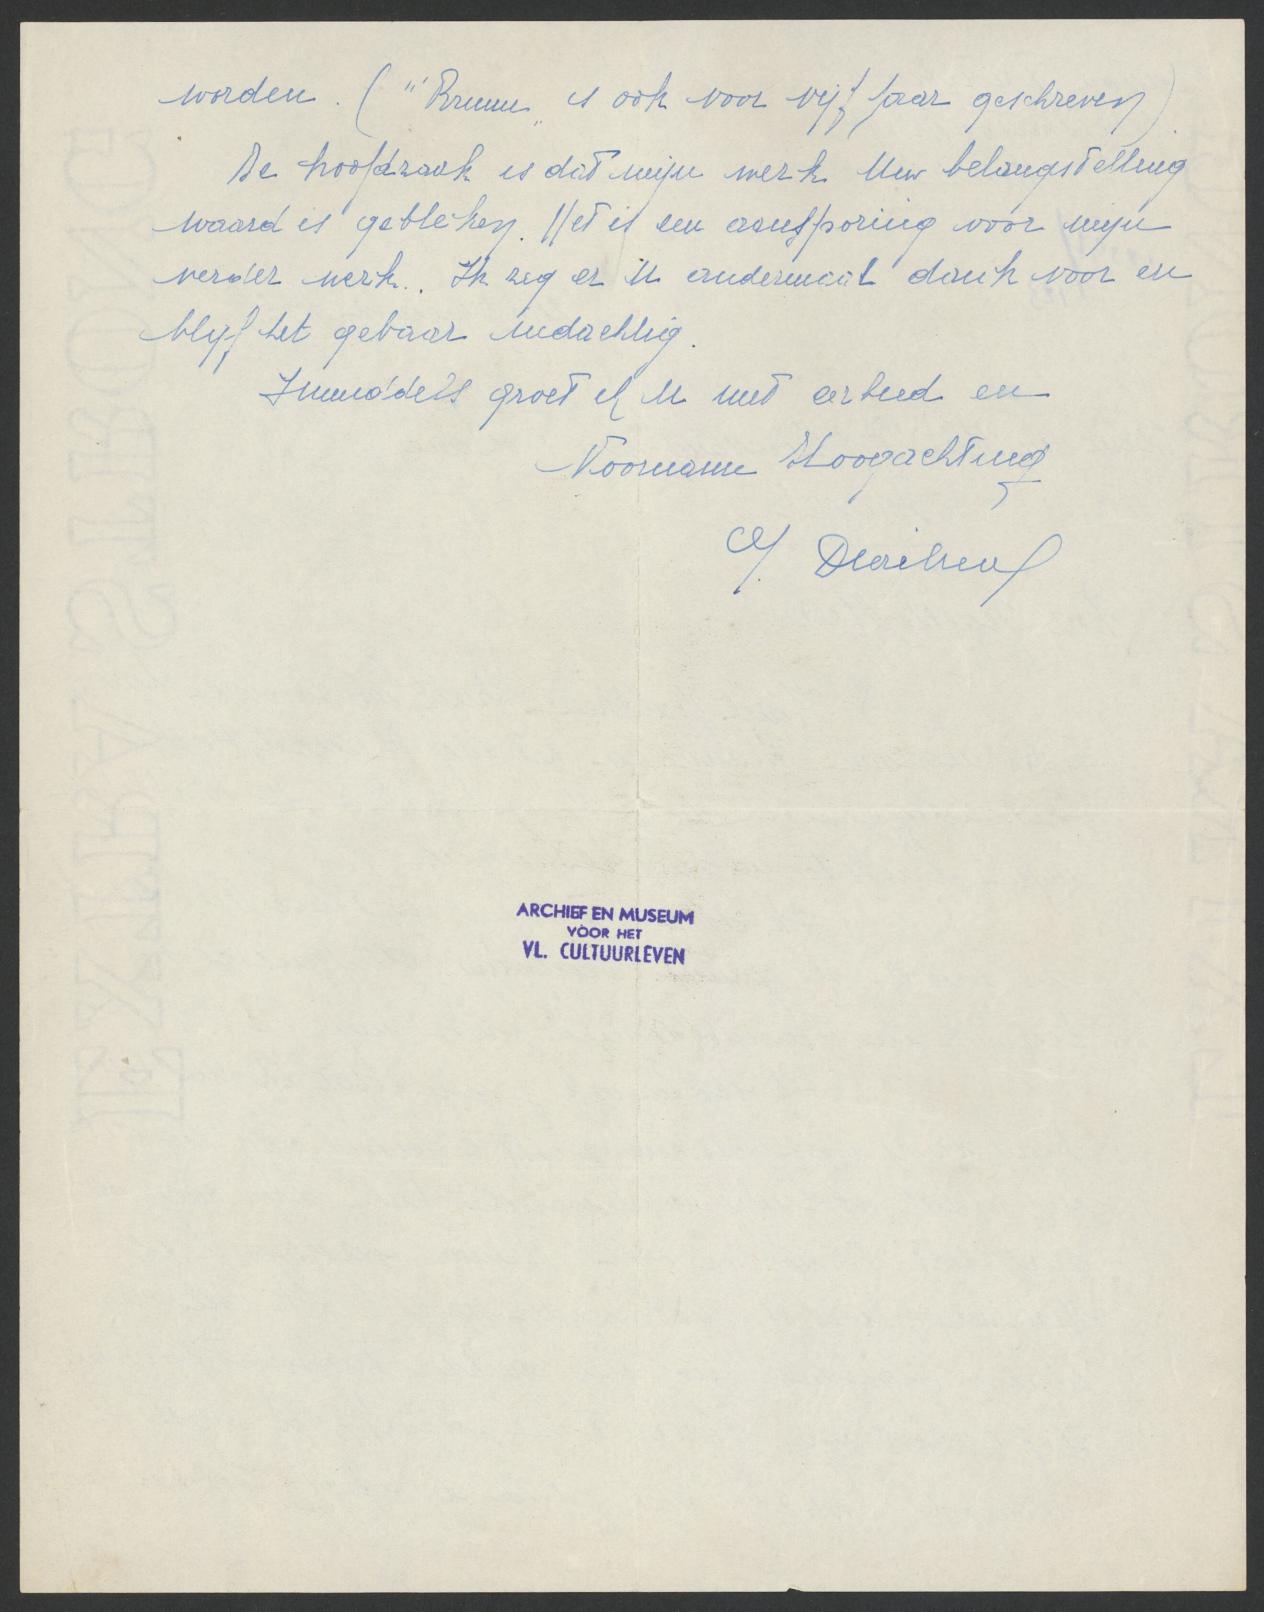 Bladzijde 2 van de brief uit 1939 van Duribreux naar Fernand Toussaint de Boelaere